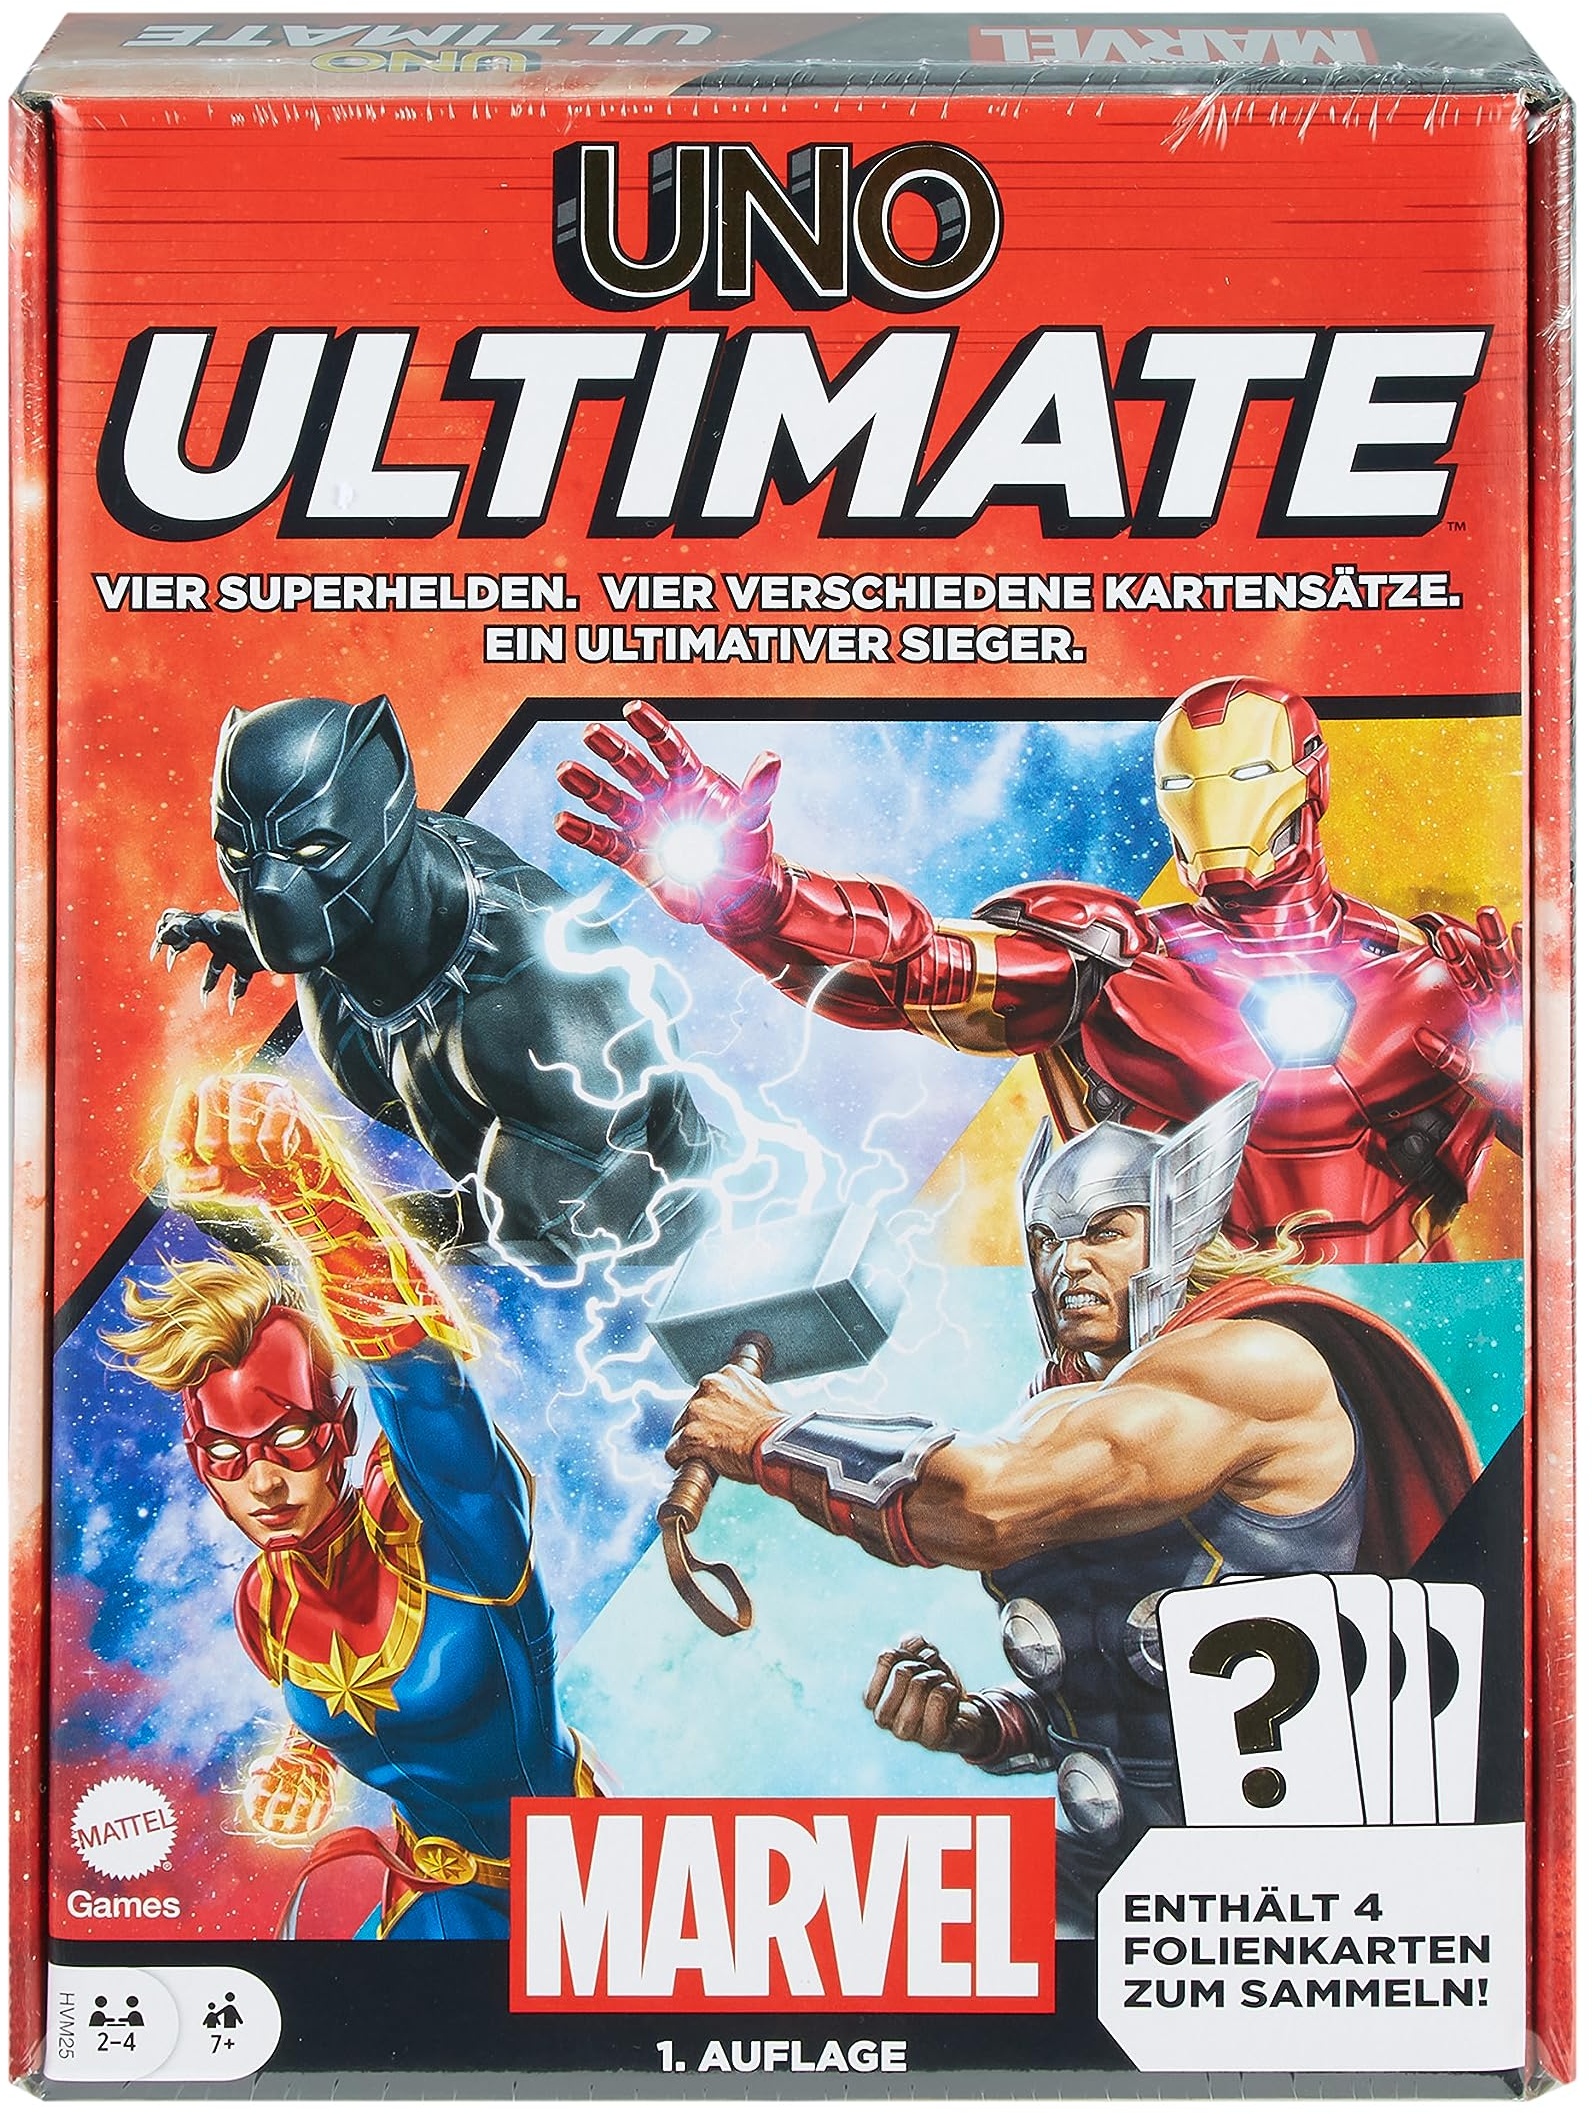 UNO Ultimate Marvel - Kartenspiel, Superhelden-Design, Captain Marvel, Iron Man, Black Panther, Thor, Spezialregeln, Gefahrenkarten, Sammelfolienkarten, ab 7 Jahren, HVM25